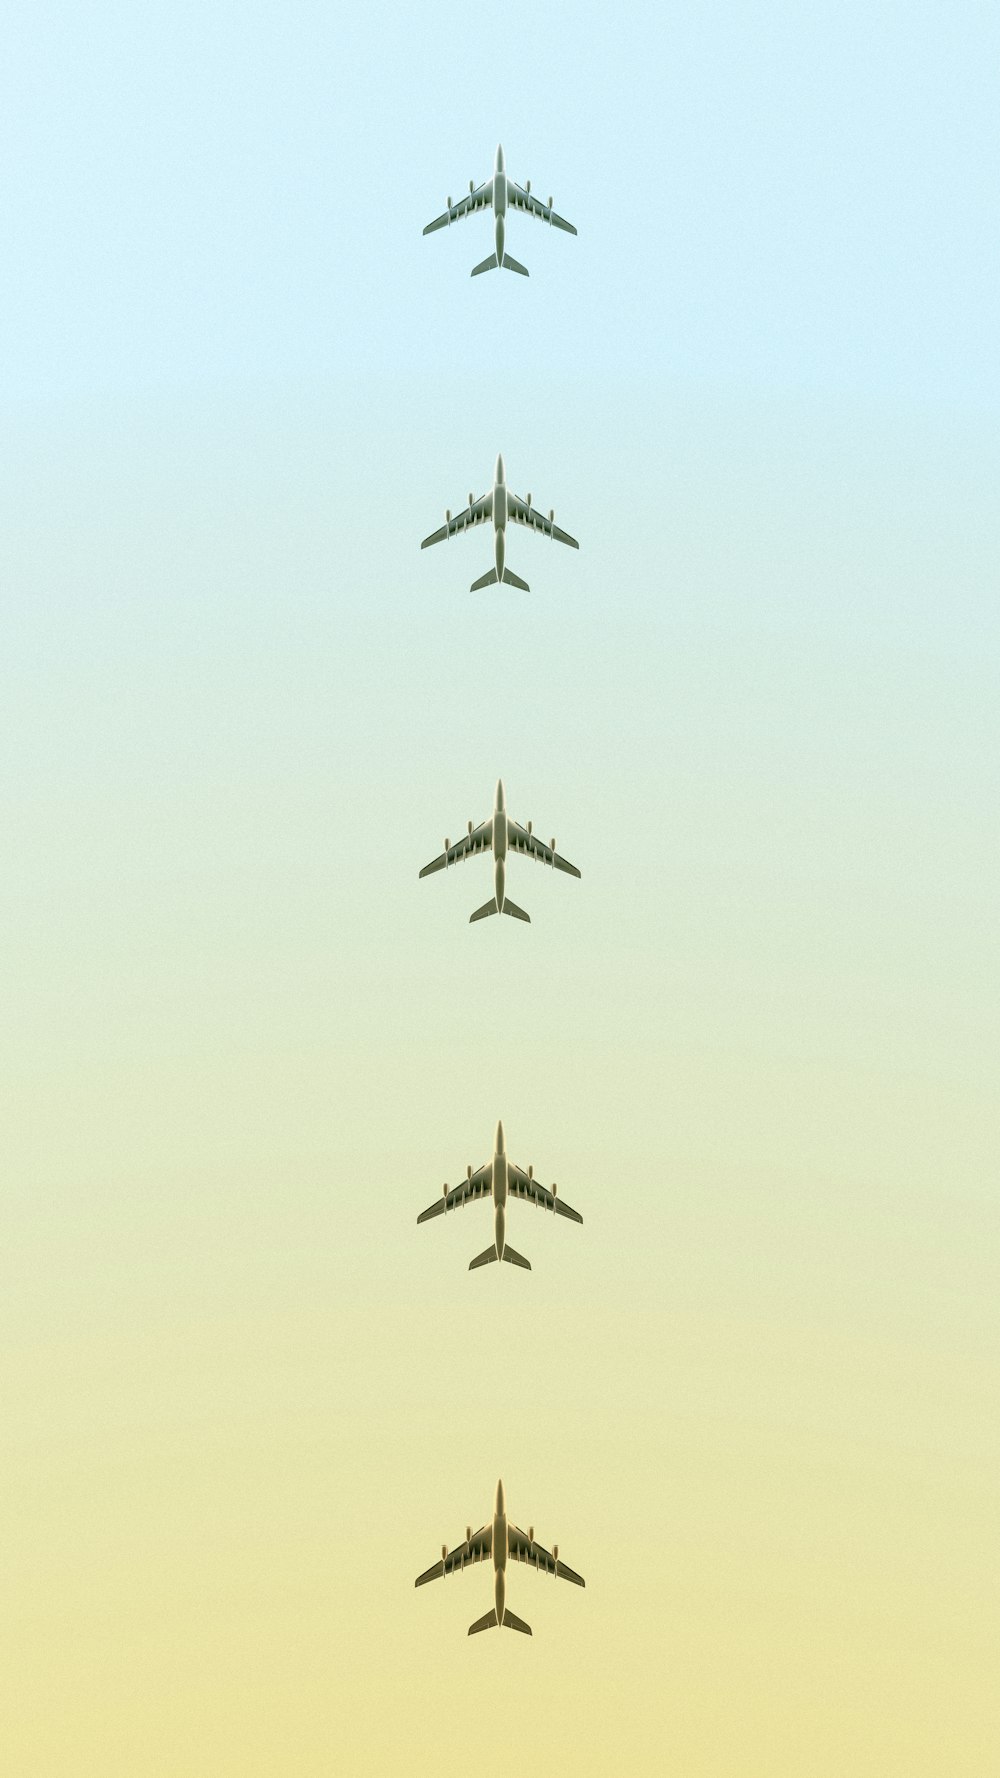 un grupo de aviones volando en el cielo